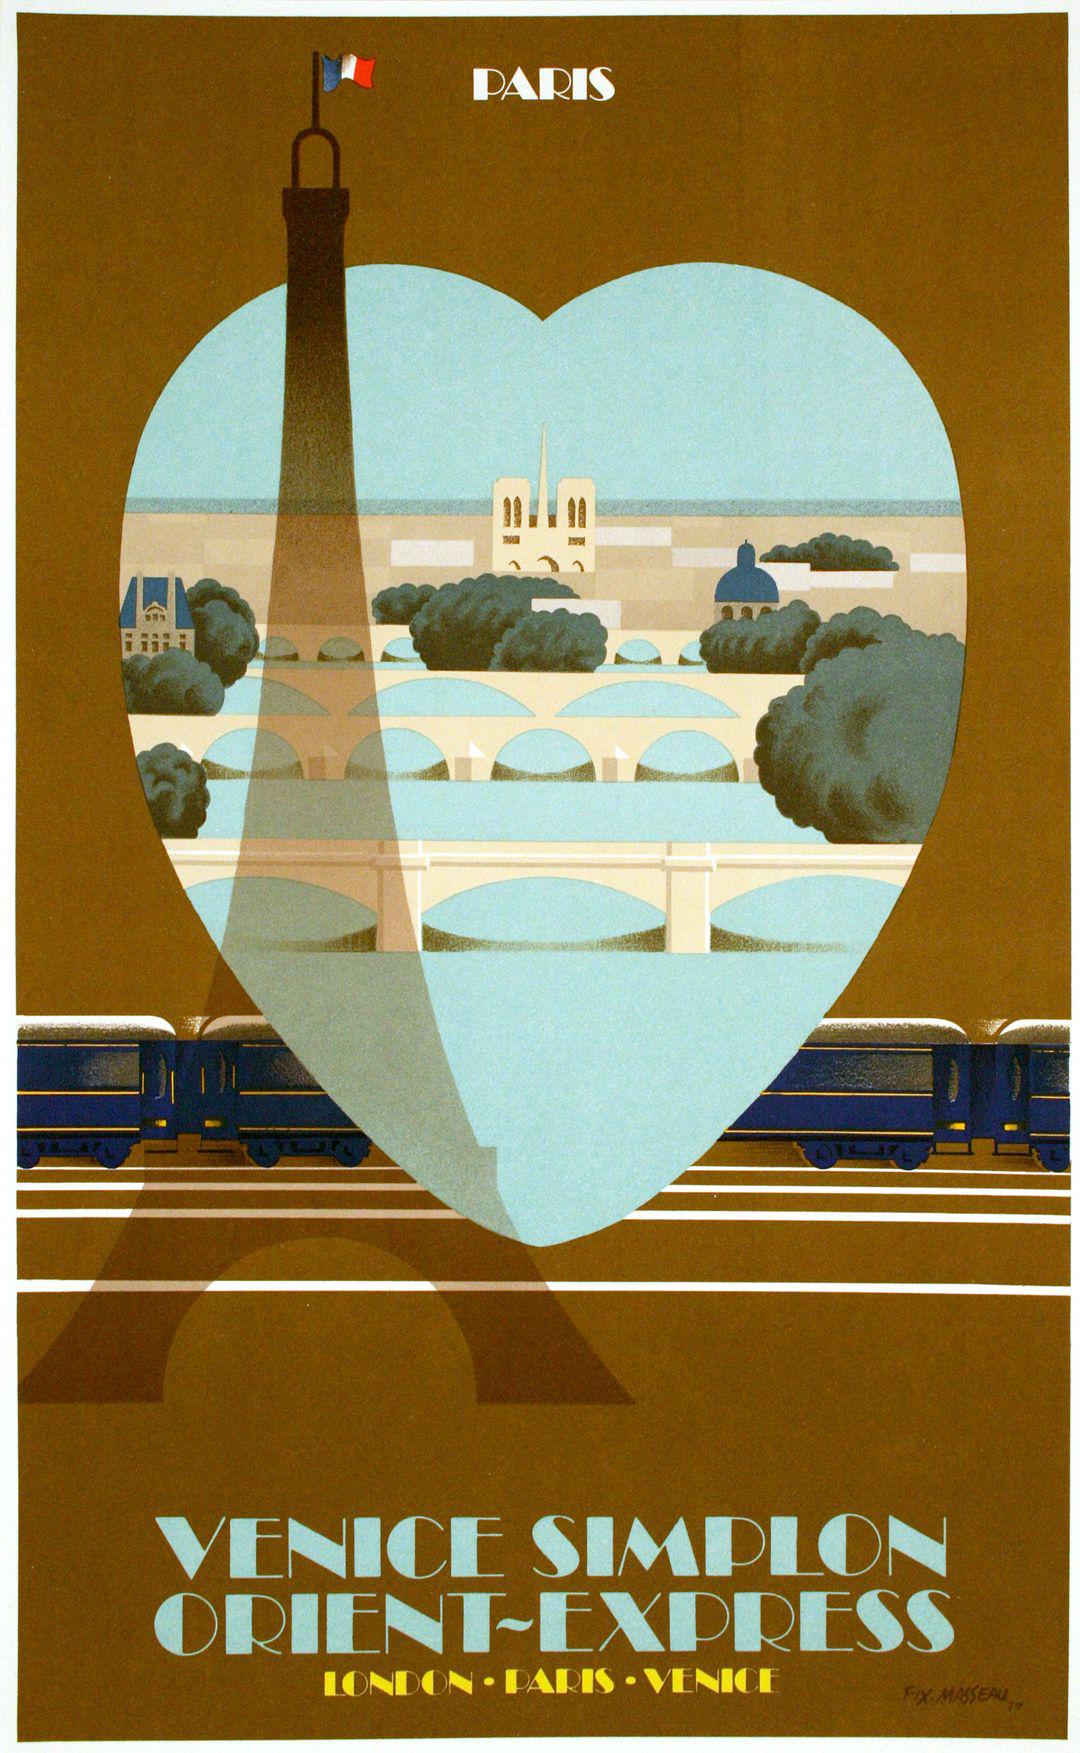 Original Vintage Poster for Venice Simplon Orient Express by Fix Masseau 1979 - Paris